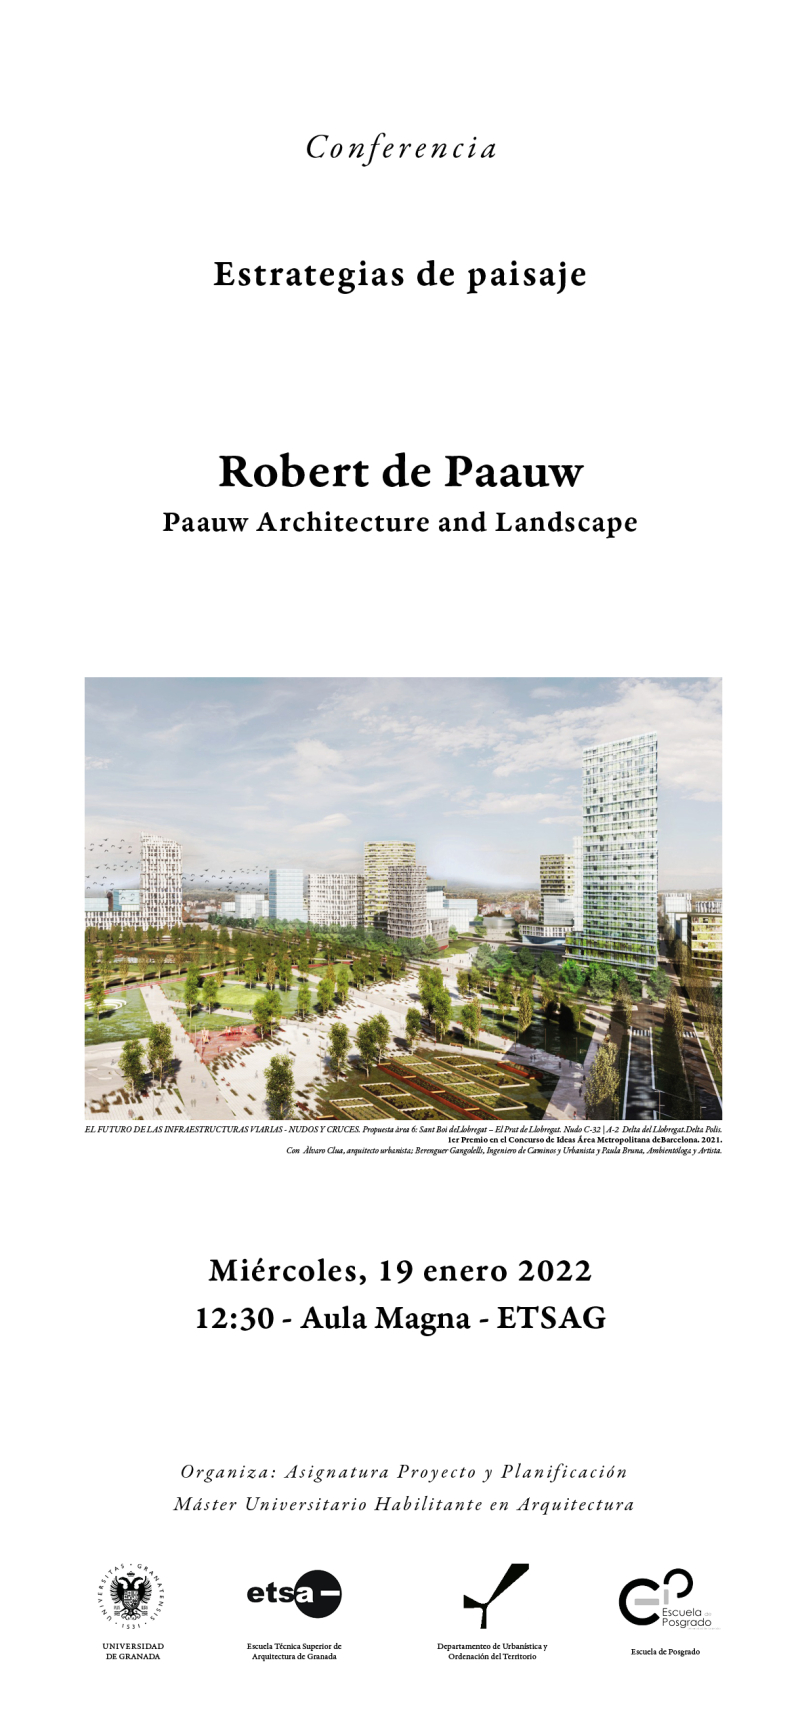 Cartel de la Conferencia de Robert de Paauw